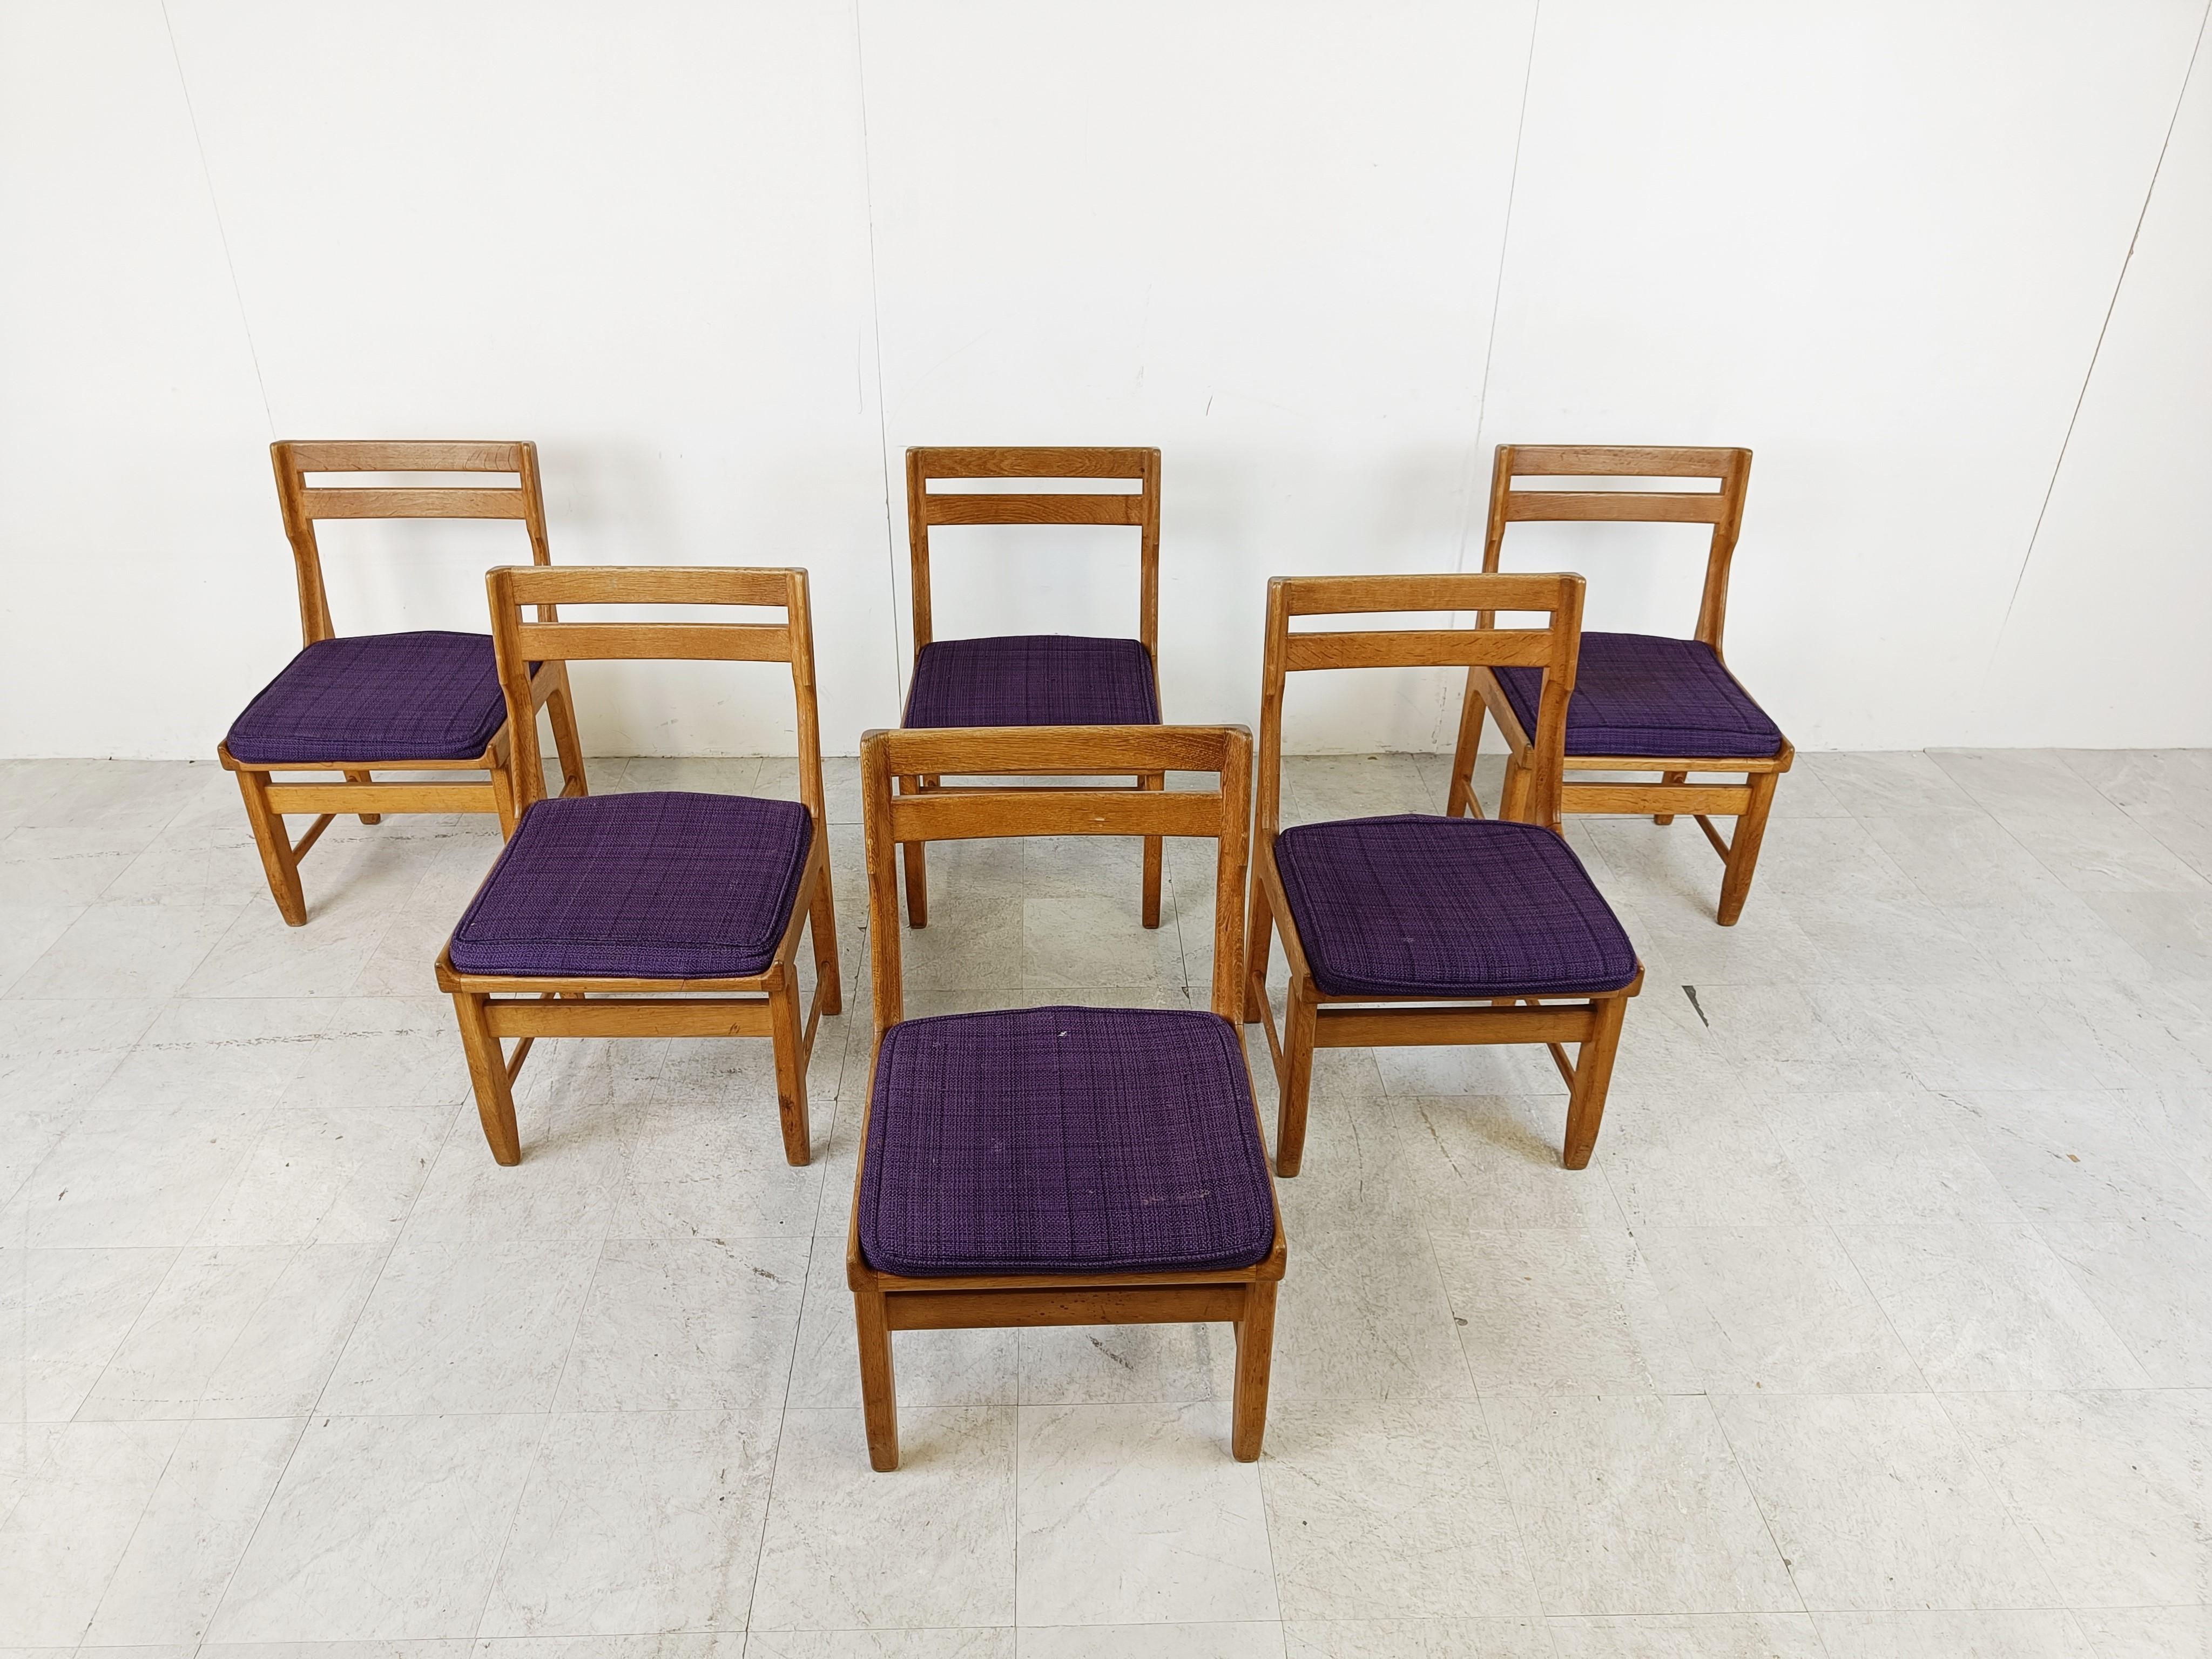 Esstischstühle aus massiver Eiche von Guillerme et Chambron für Votre Maison Modell Raphael.

Wunderschön gearbeitete Stühle mit geschwungenen Elementen.

Kommt mit lila Stoffsitzen.

Die Stühle sind sehr stabil und in gutem Zustand.

Wir